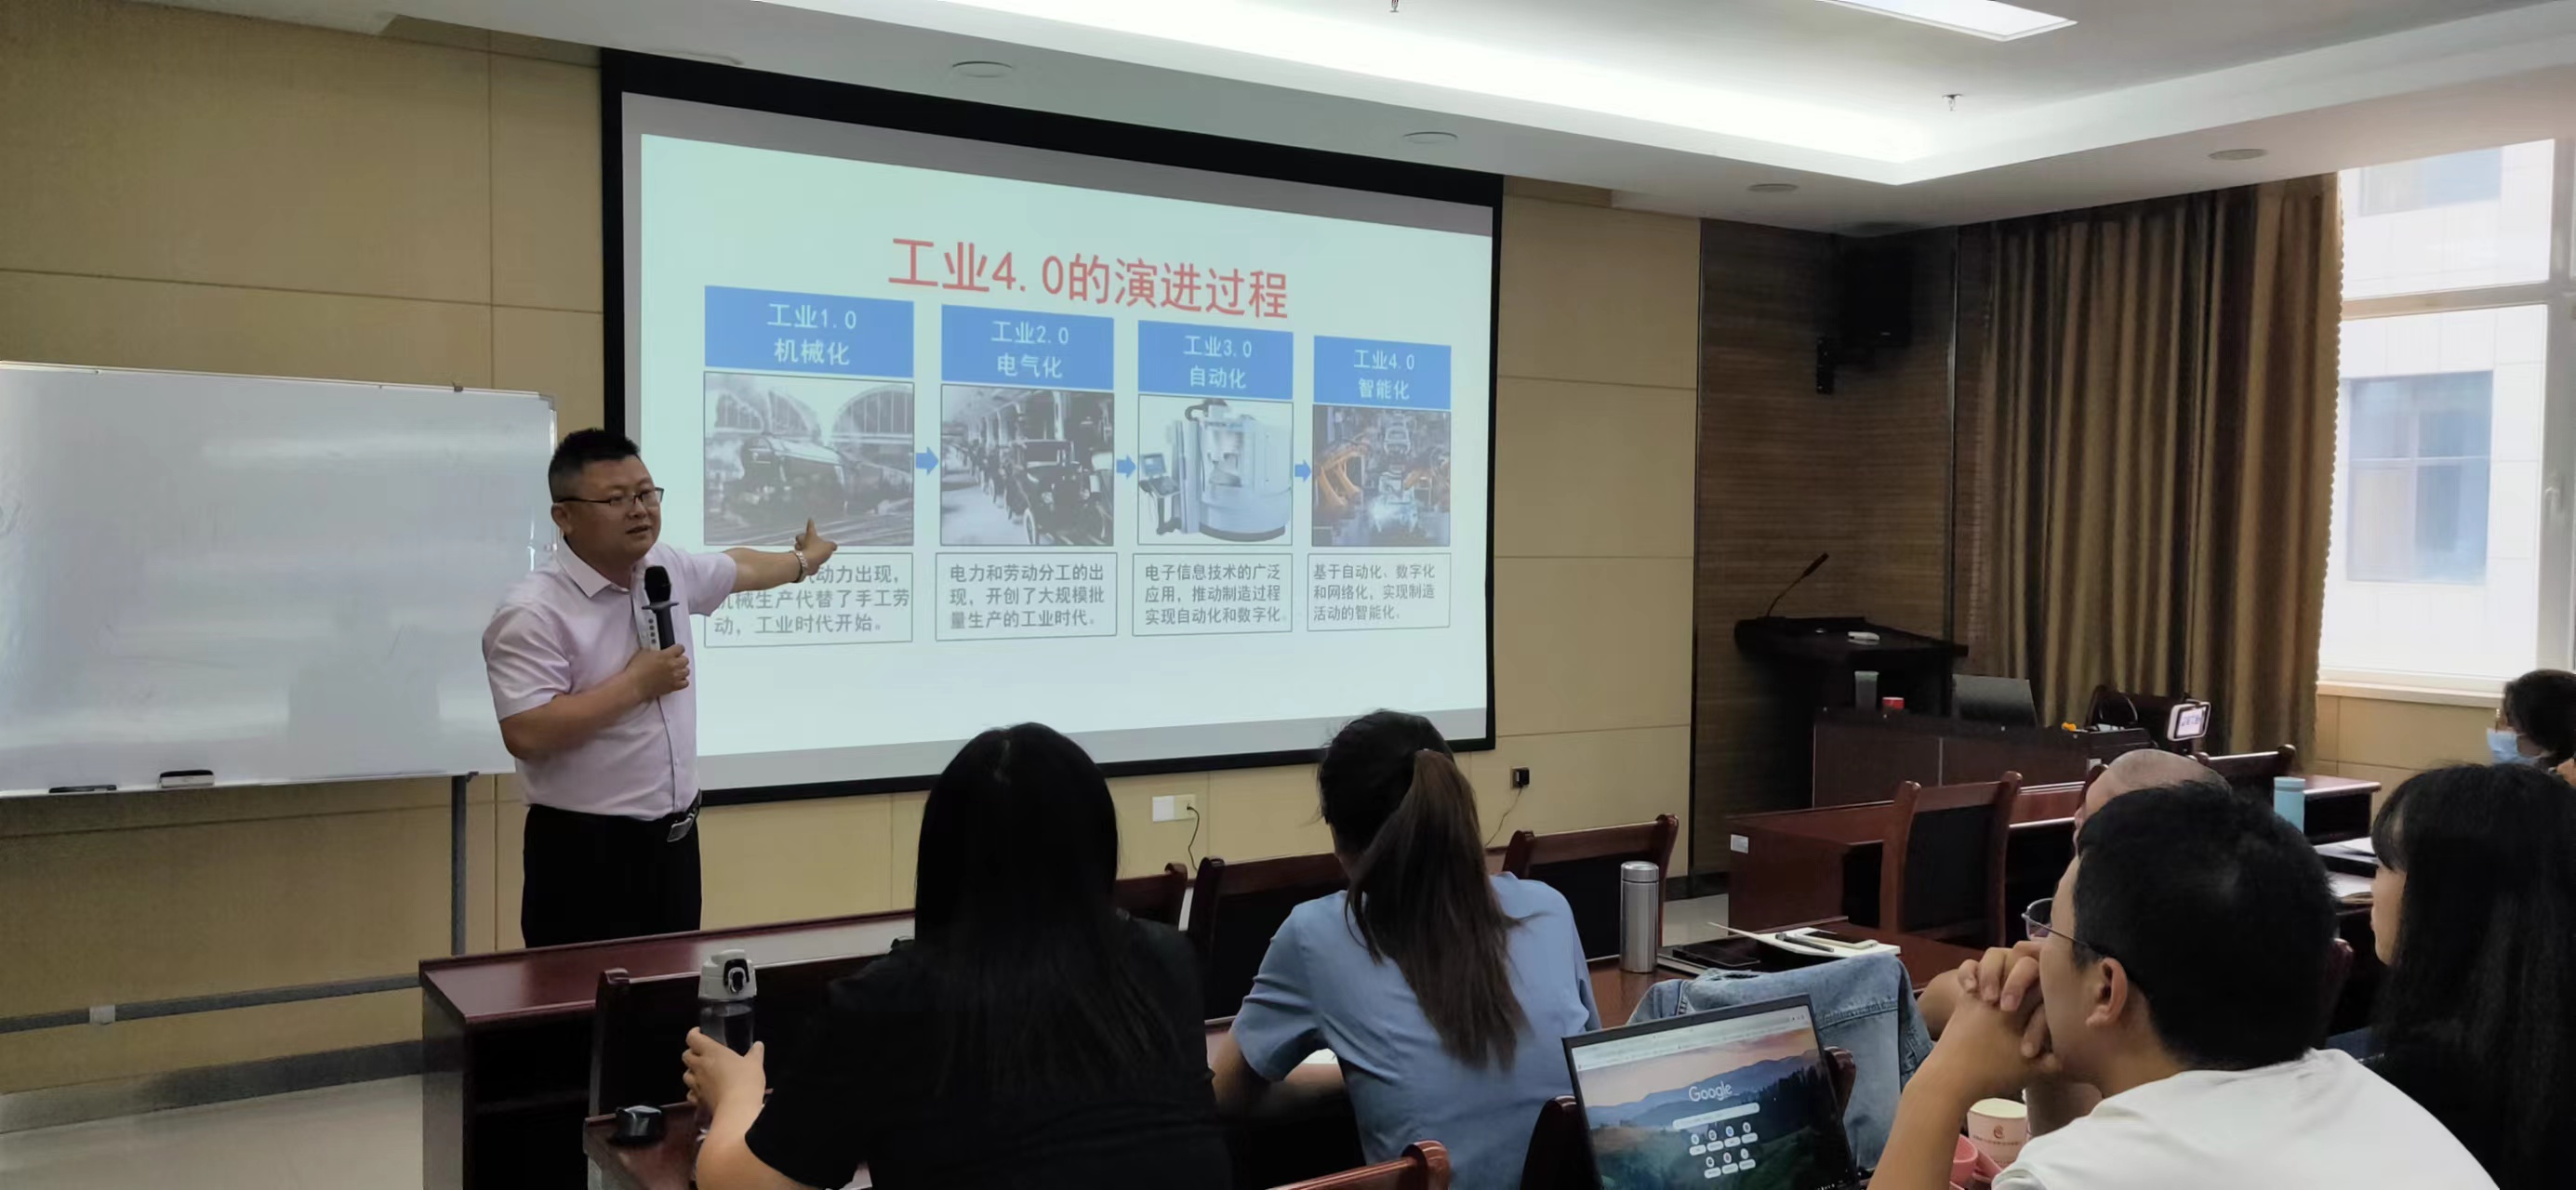 董海滨老师 6月10-11号给山东某工信局讲授《智能制造与智能工厂打造》课程